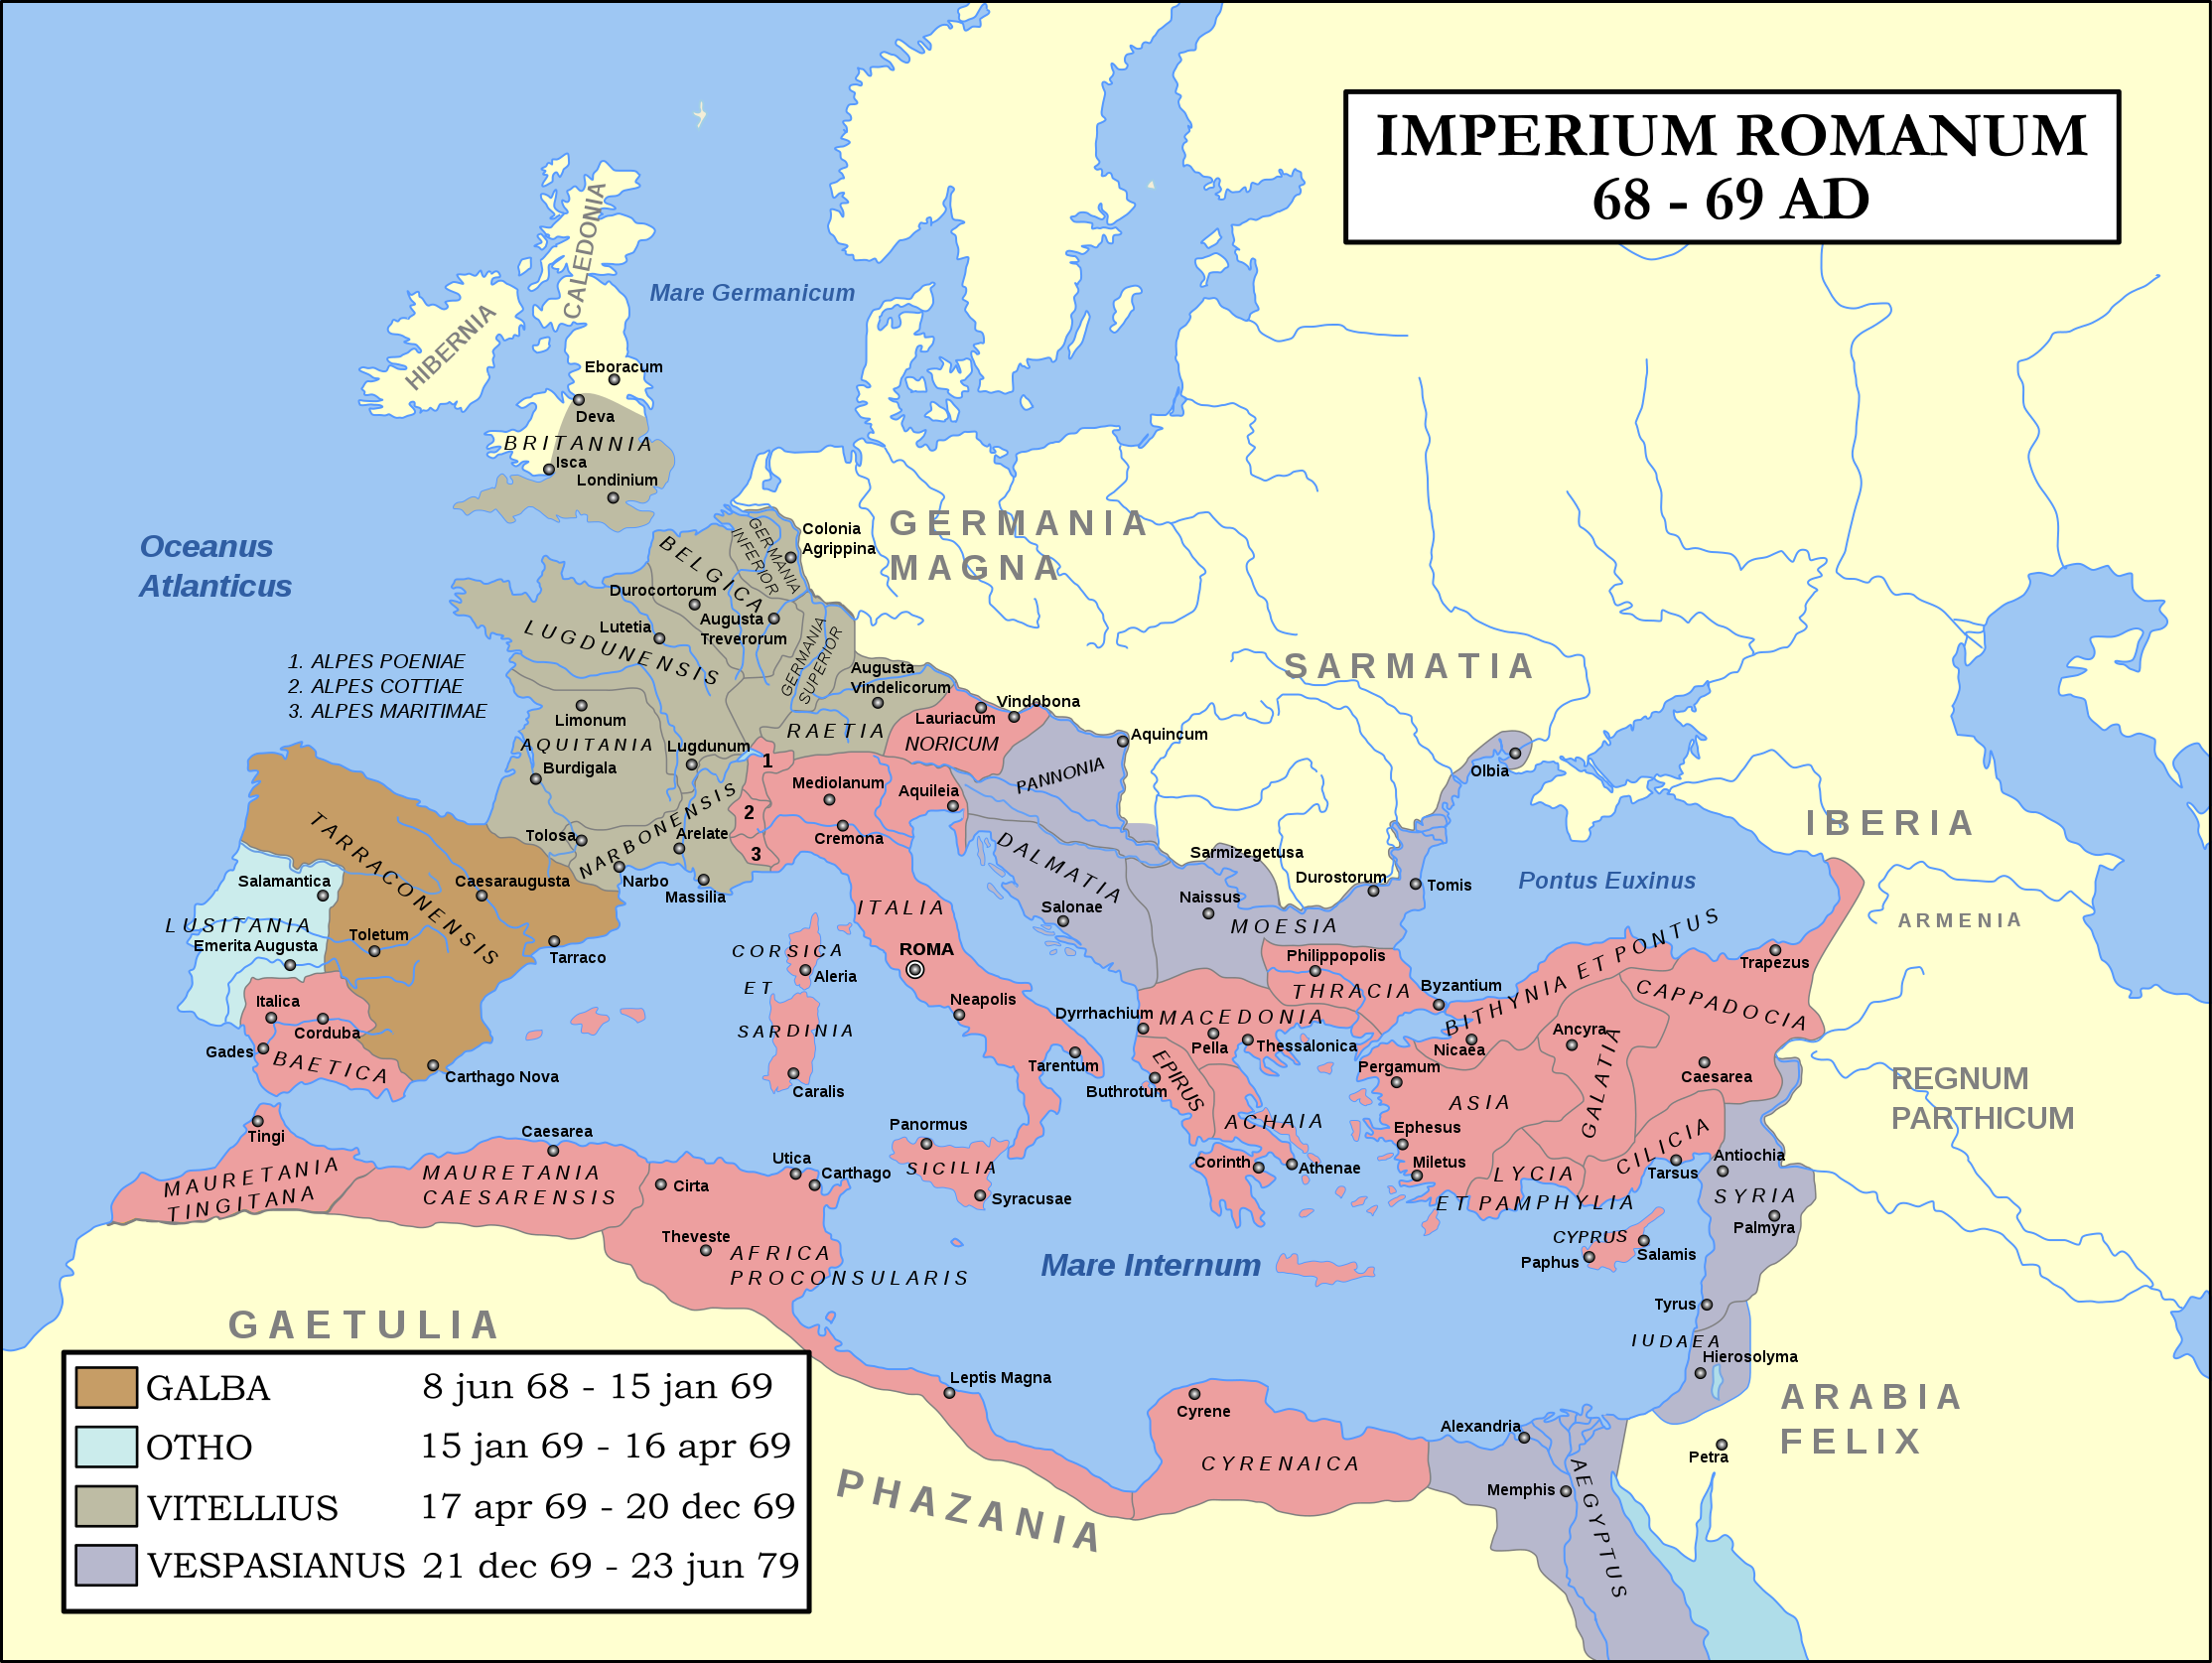 如果罗马帝国发生类似汉末大战,各行省割据,一般哪个行省完成统一?